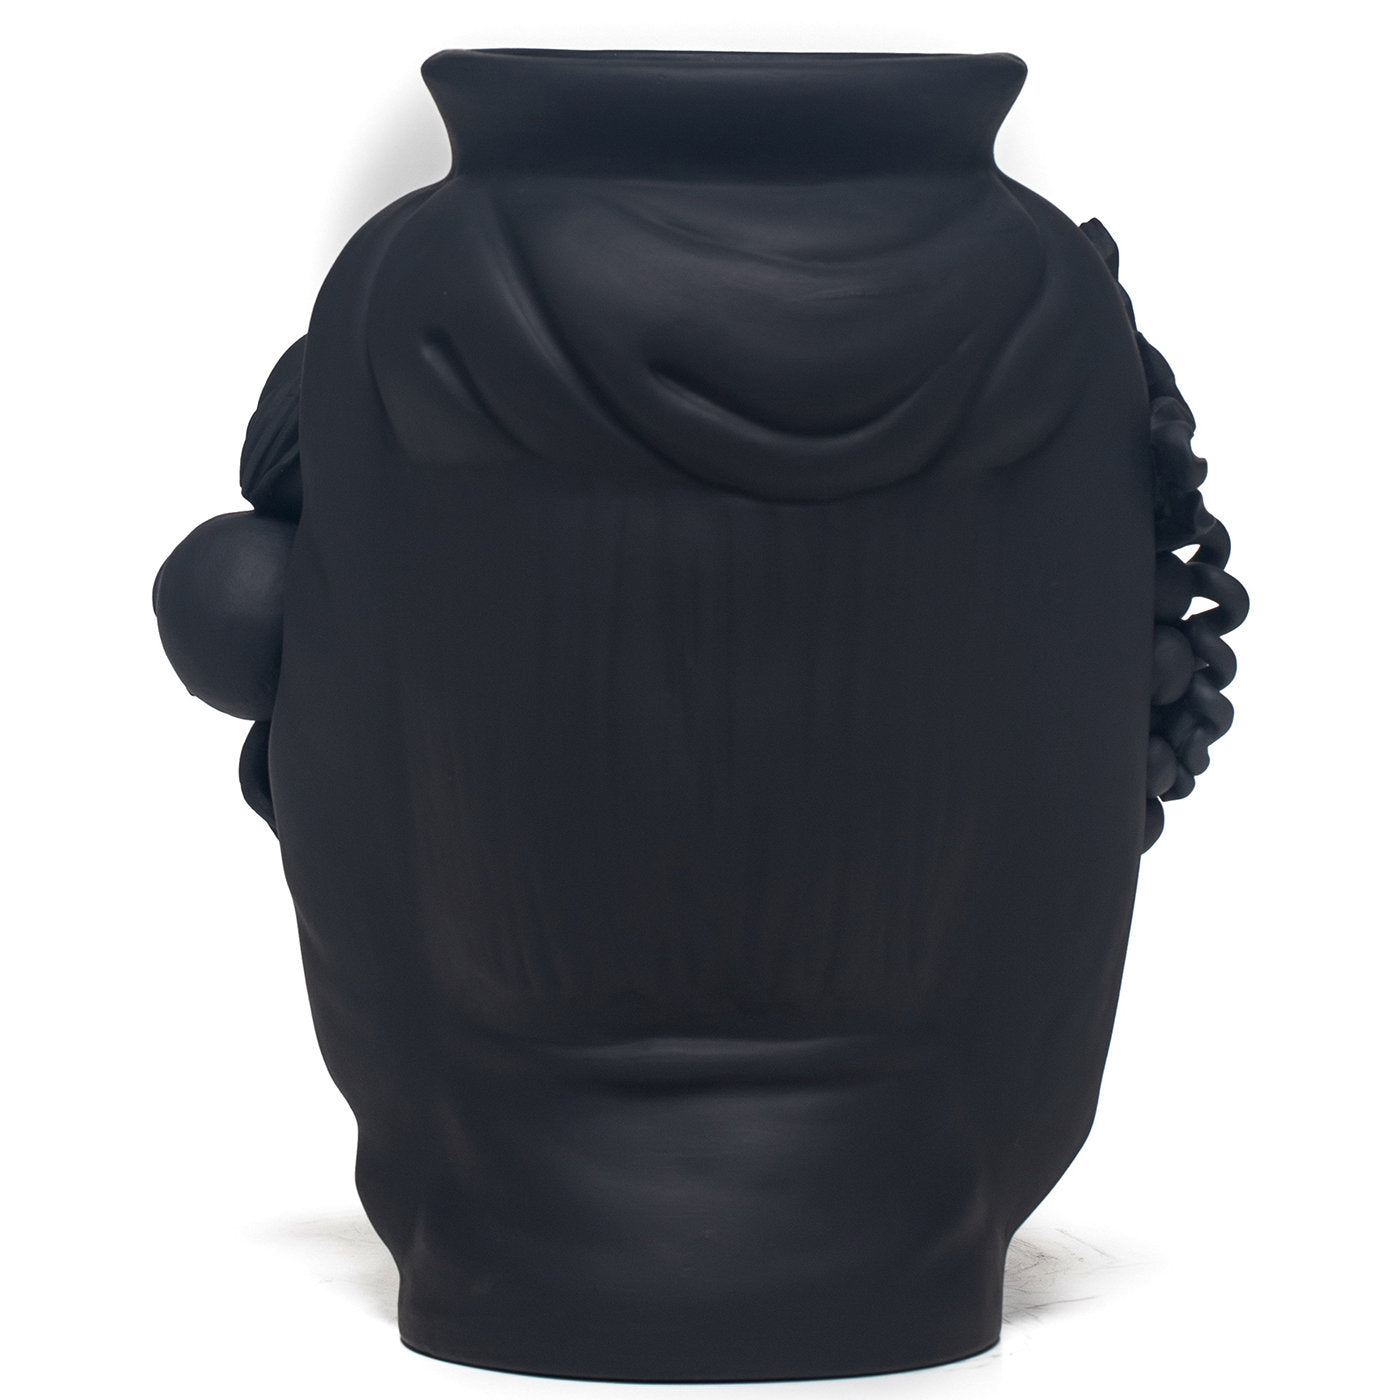 Sasà Black Vase - Alternative view 2